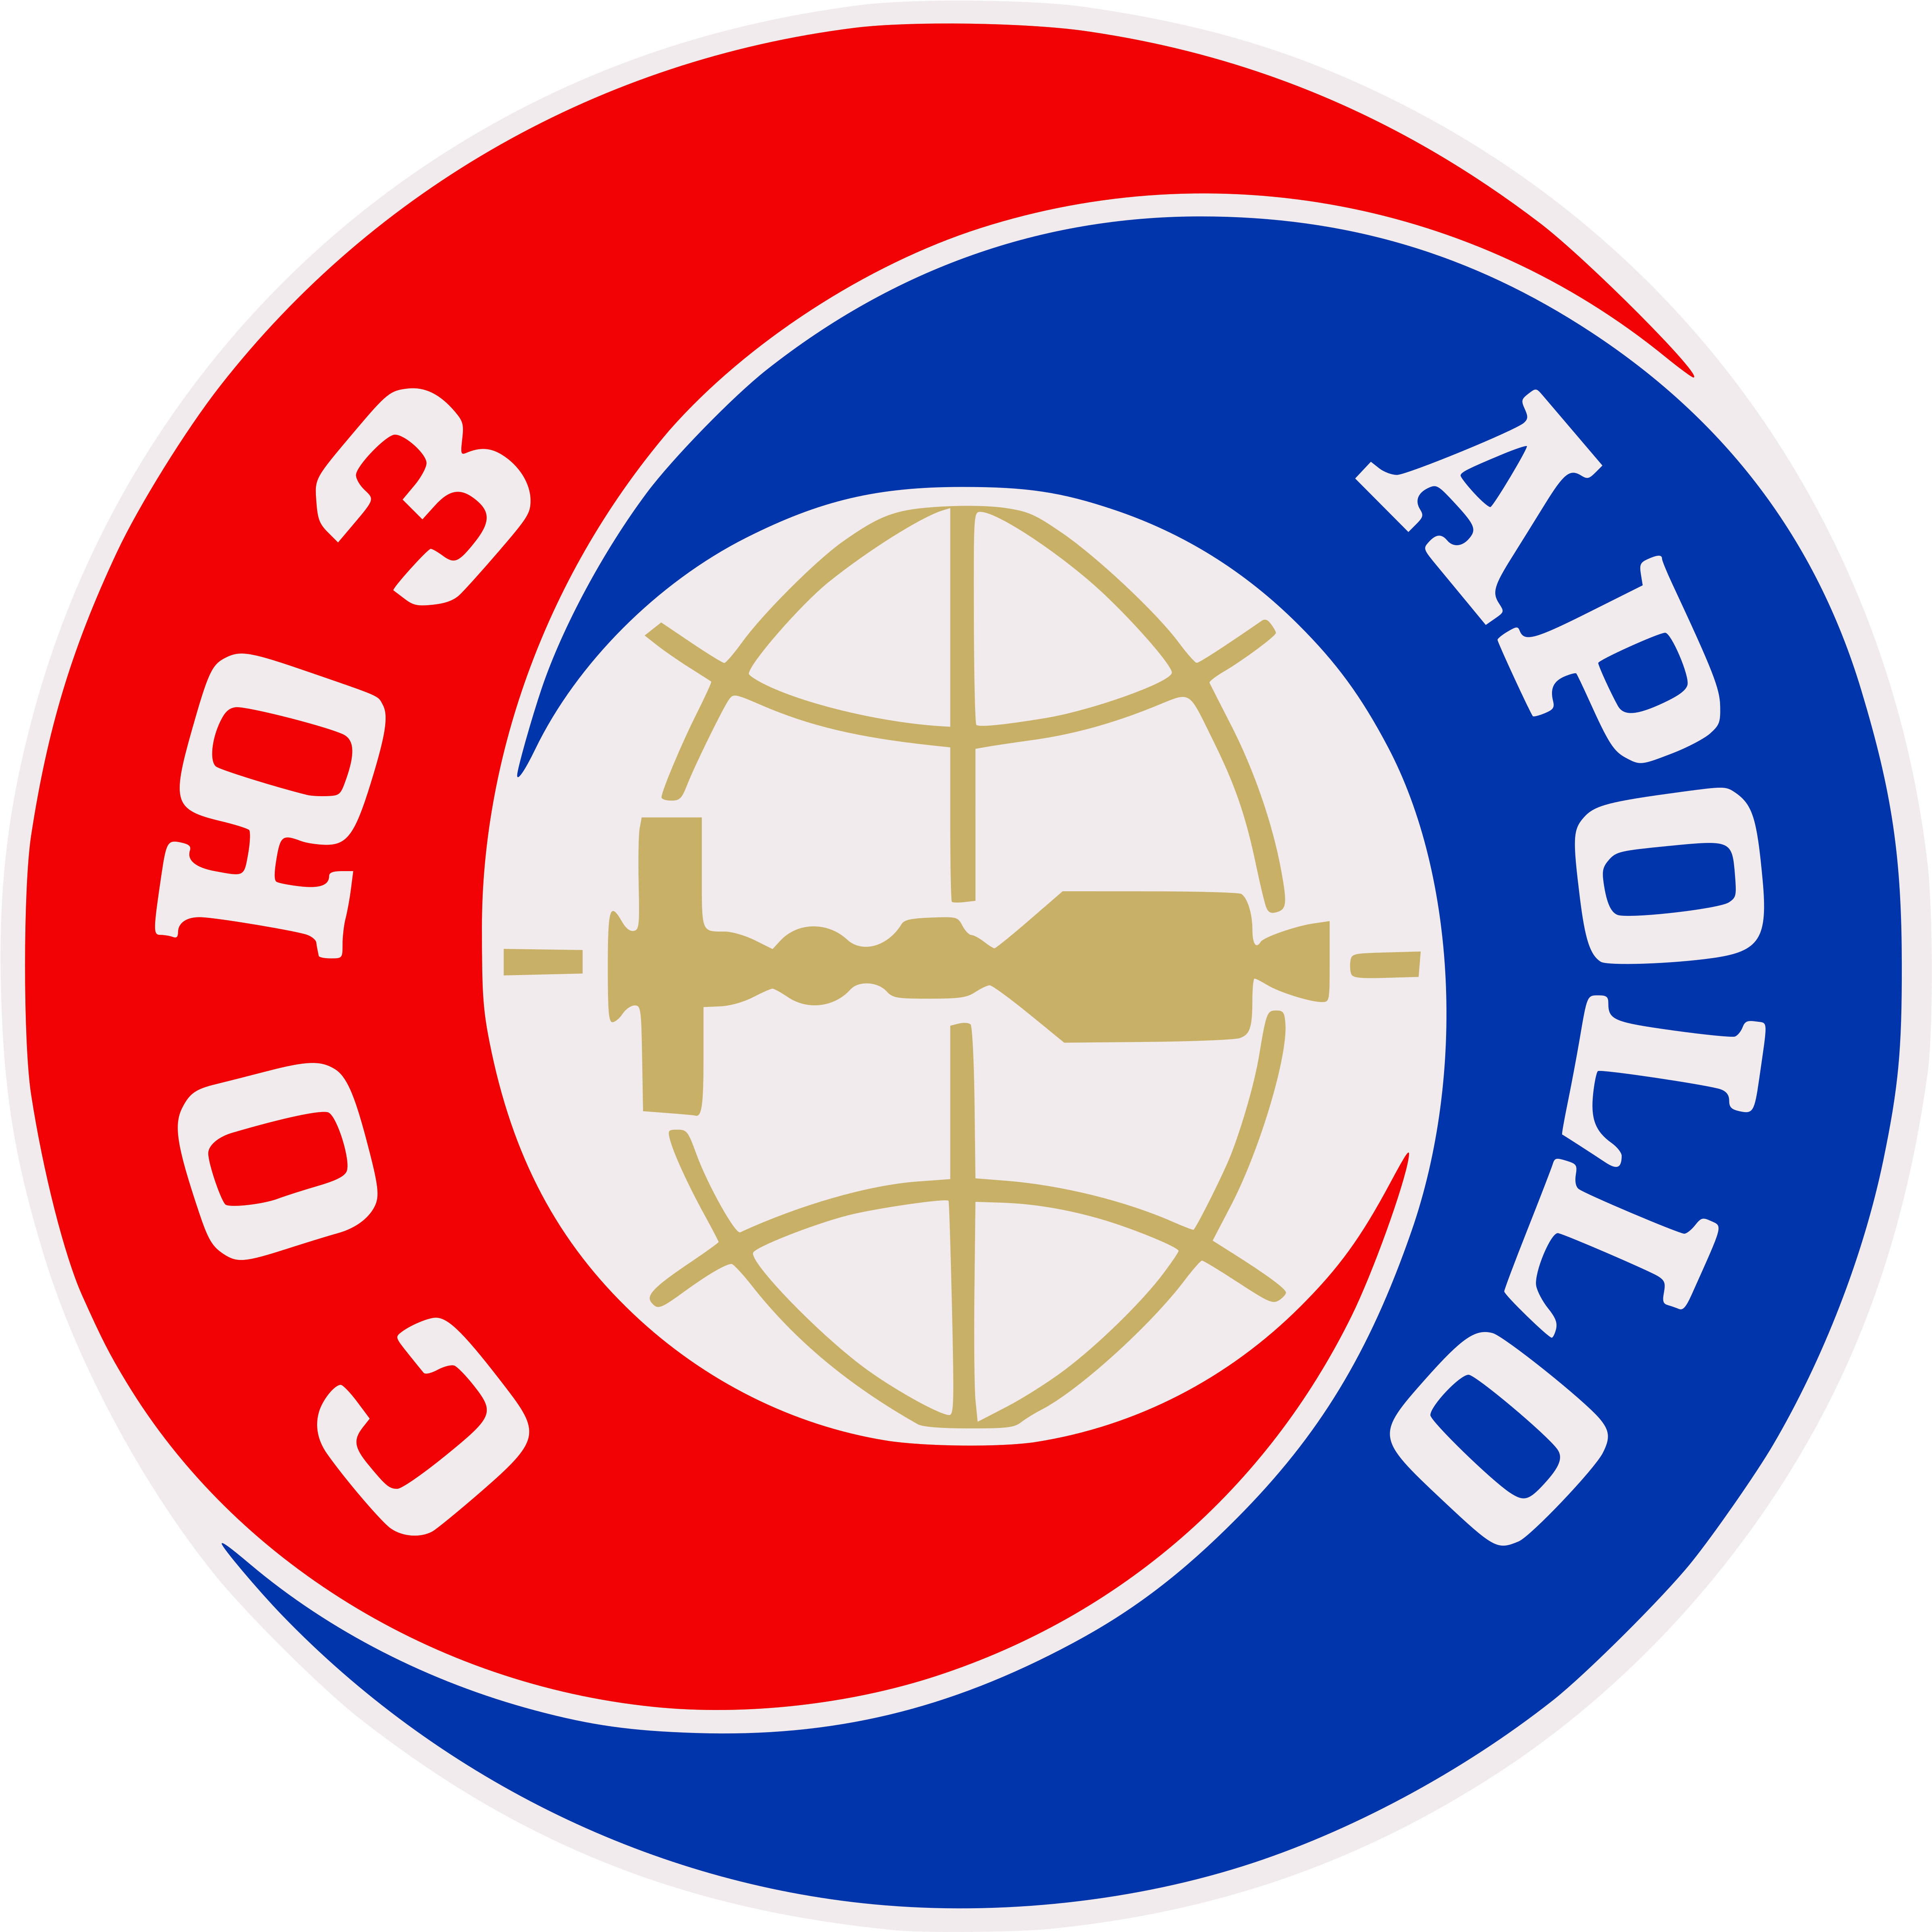 Nasa Emblem 25, Buy Clip Art - Apollo Soyuz Test Project (5333x5333)